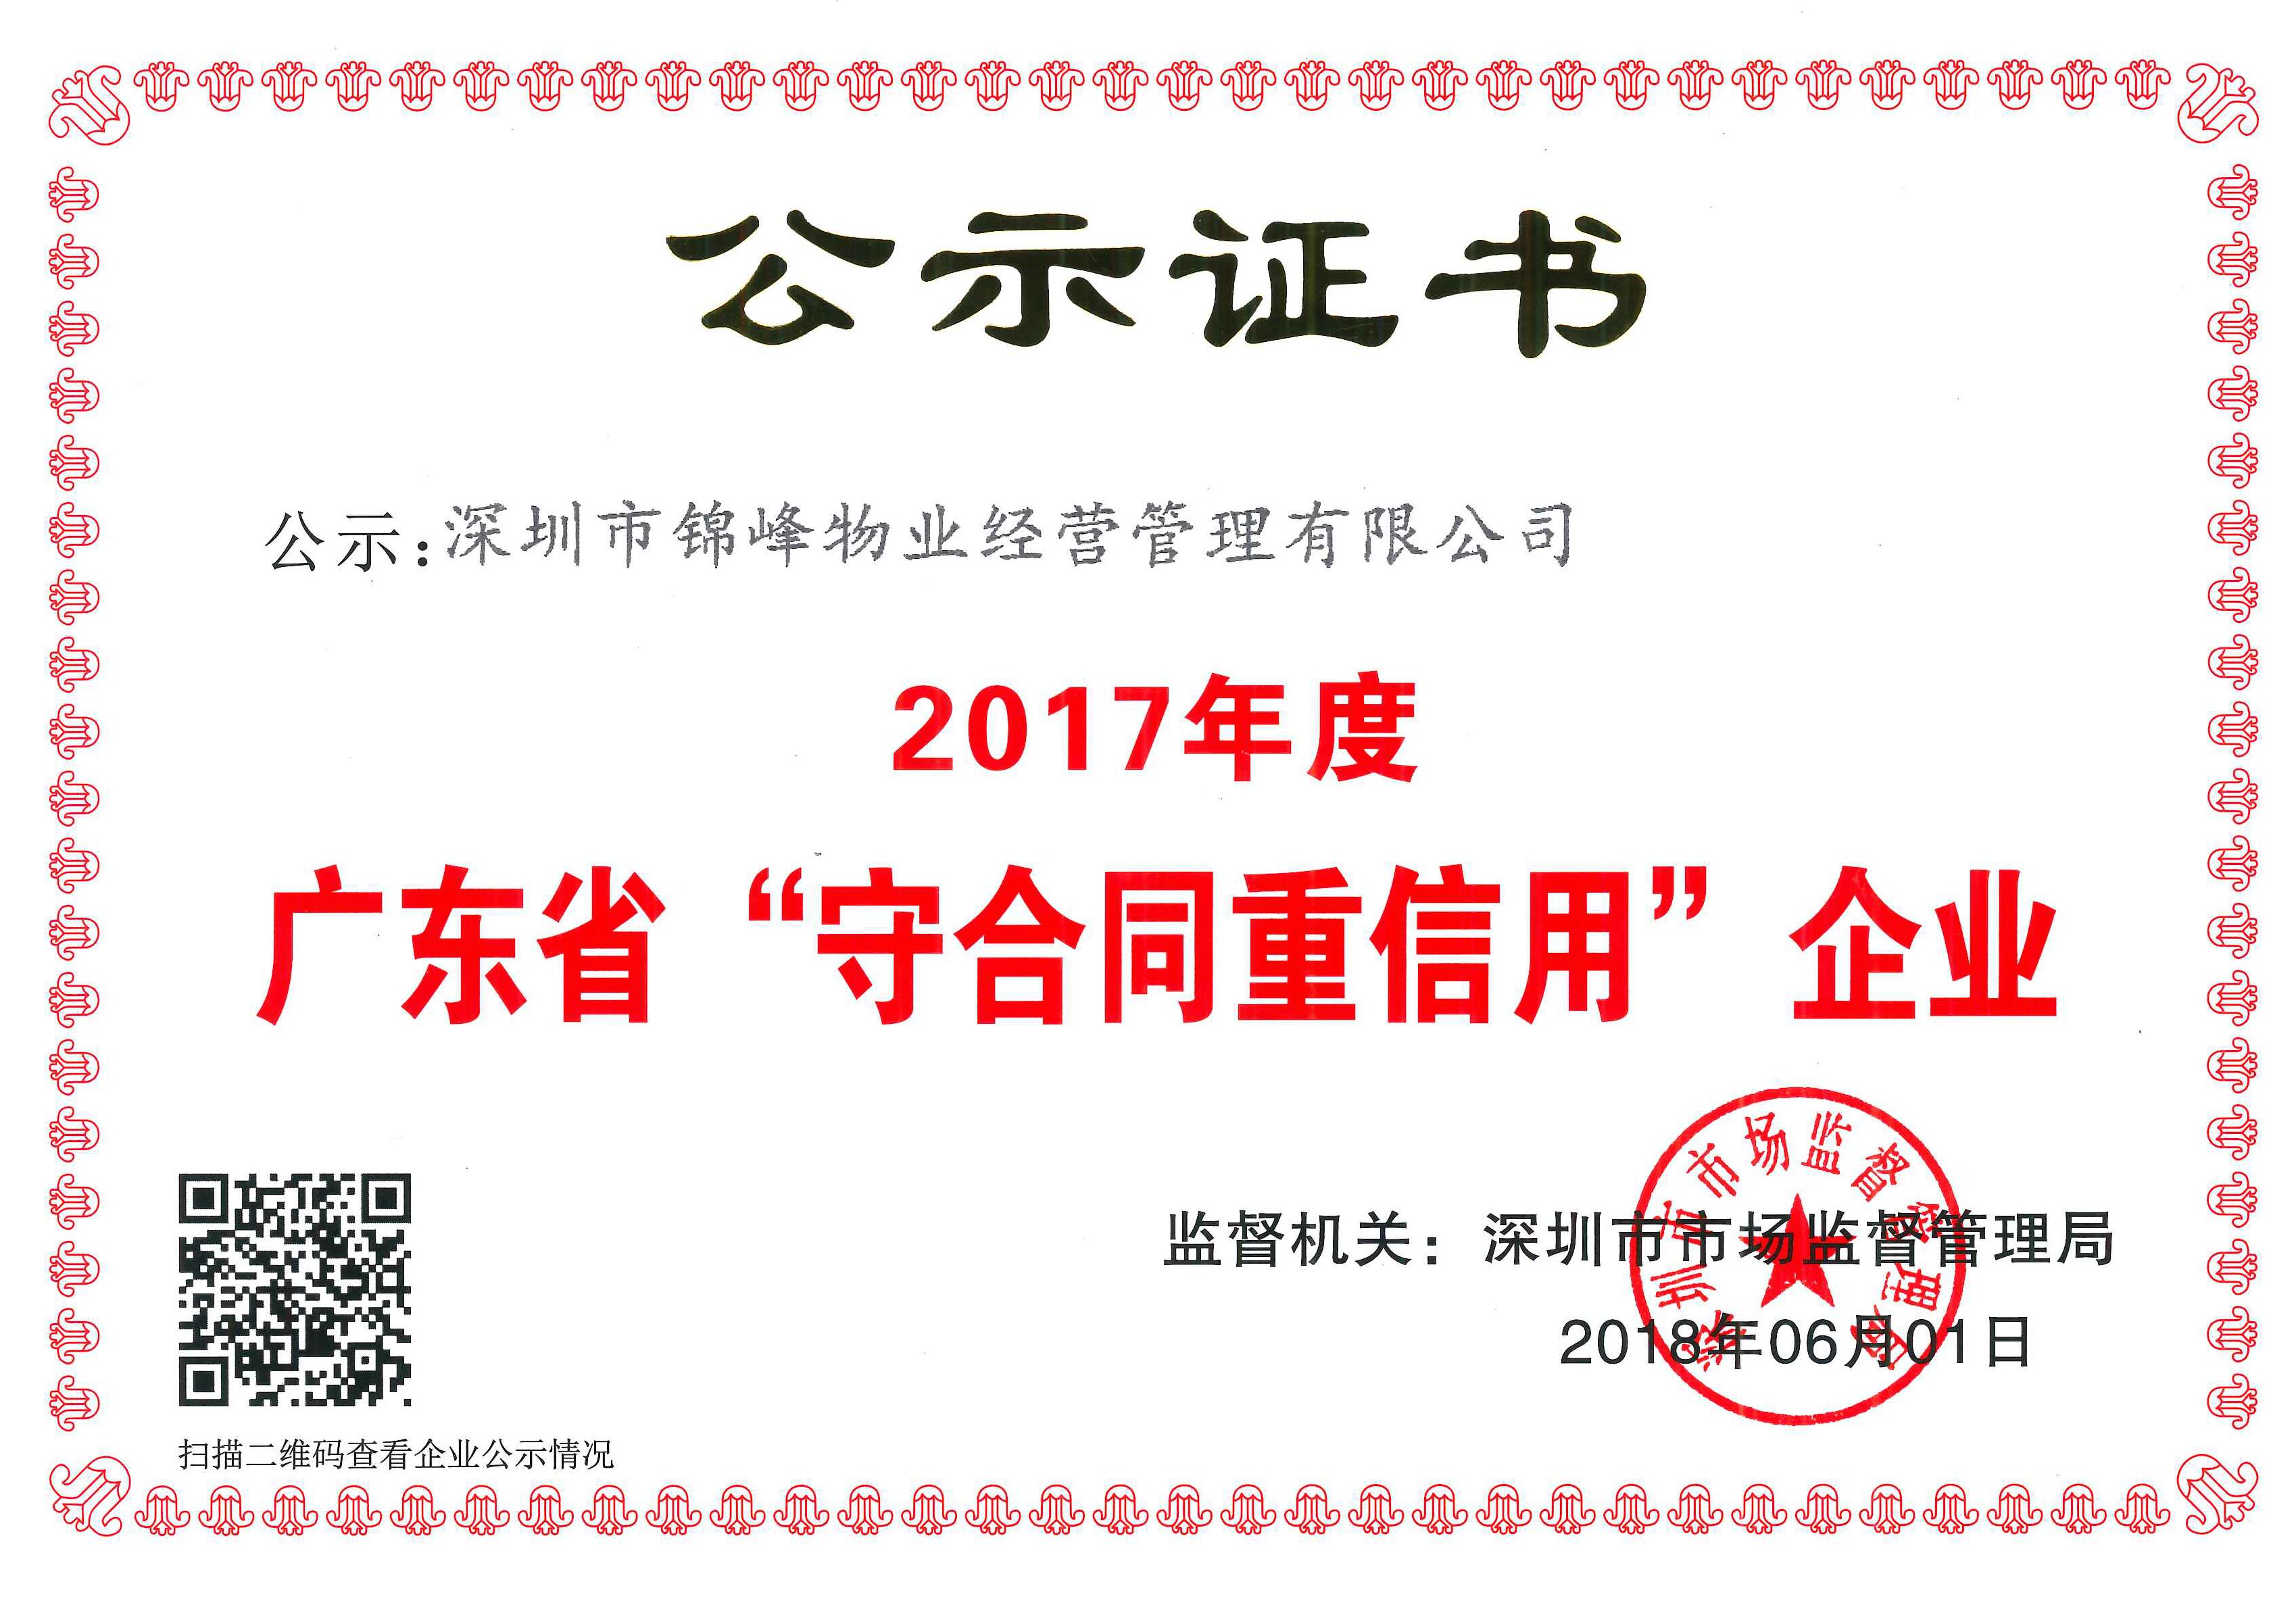 公司获得2017年度广东省“守合同重信用企业”荣誉称号